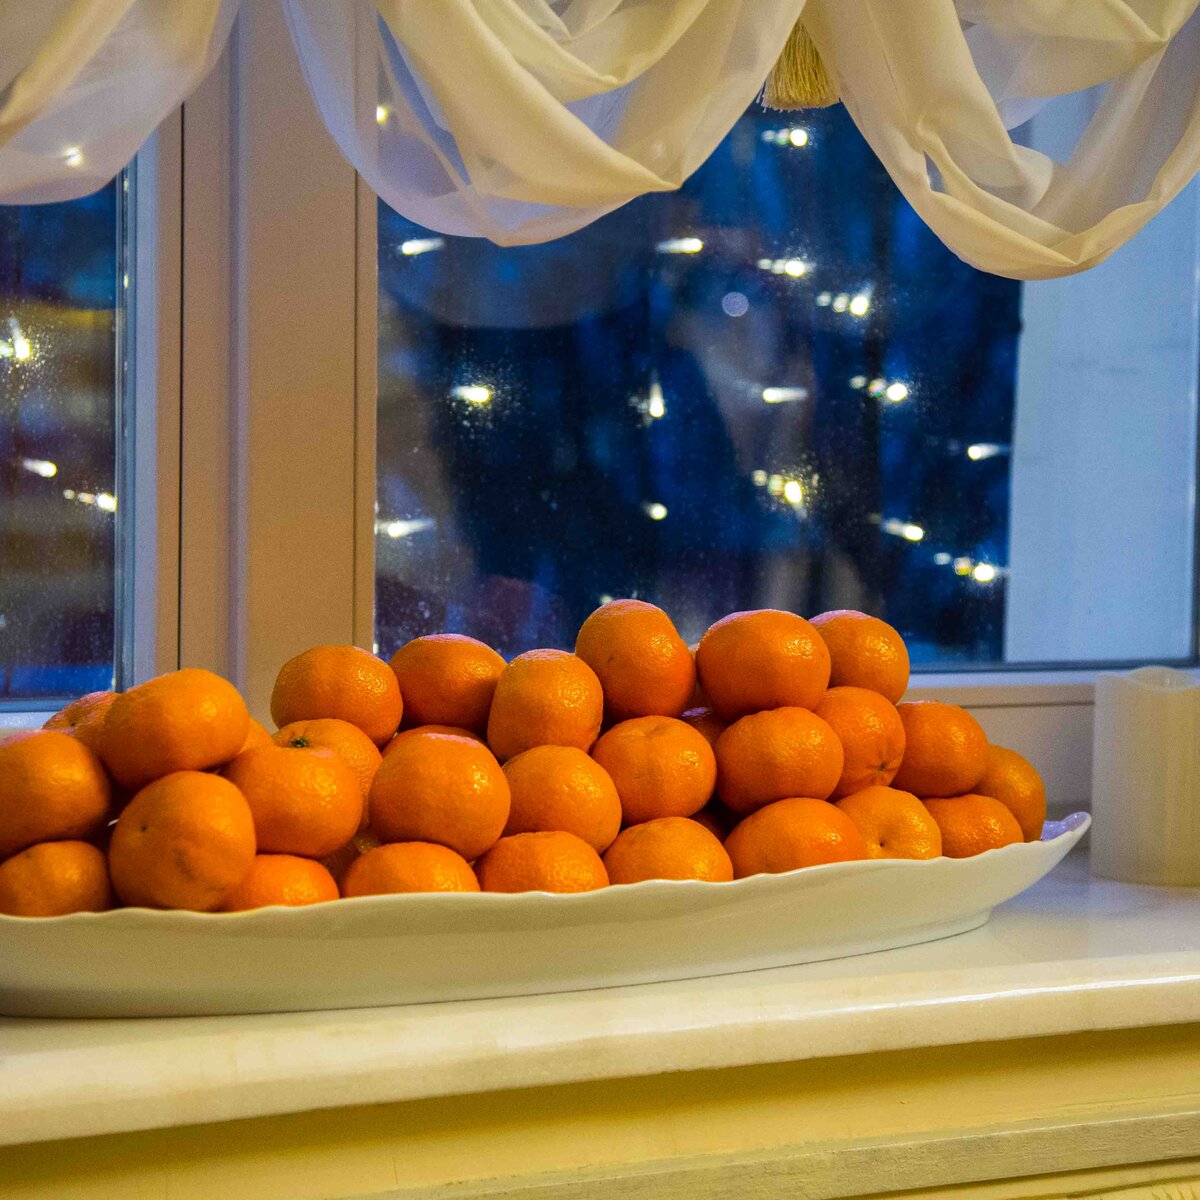 Столовая мандарин. Мандарины в тарелке. Турецкие мандарины. Мандарины на окне. Большой мандарин.